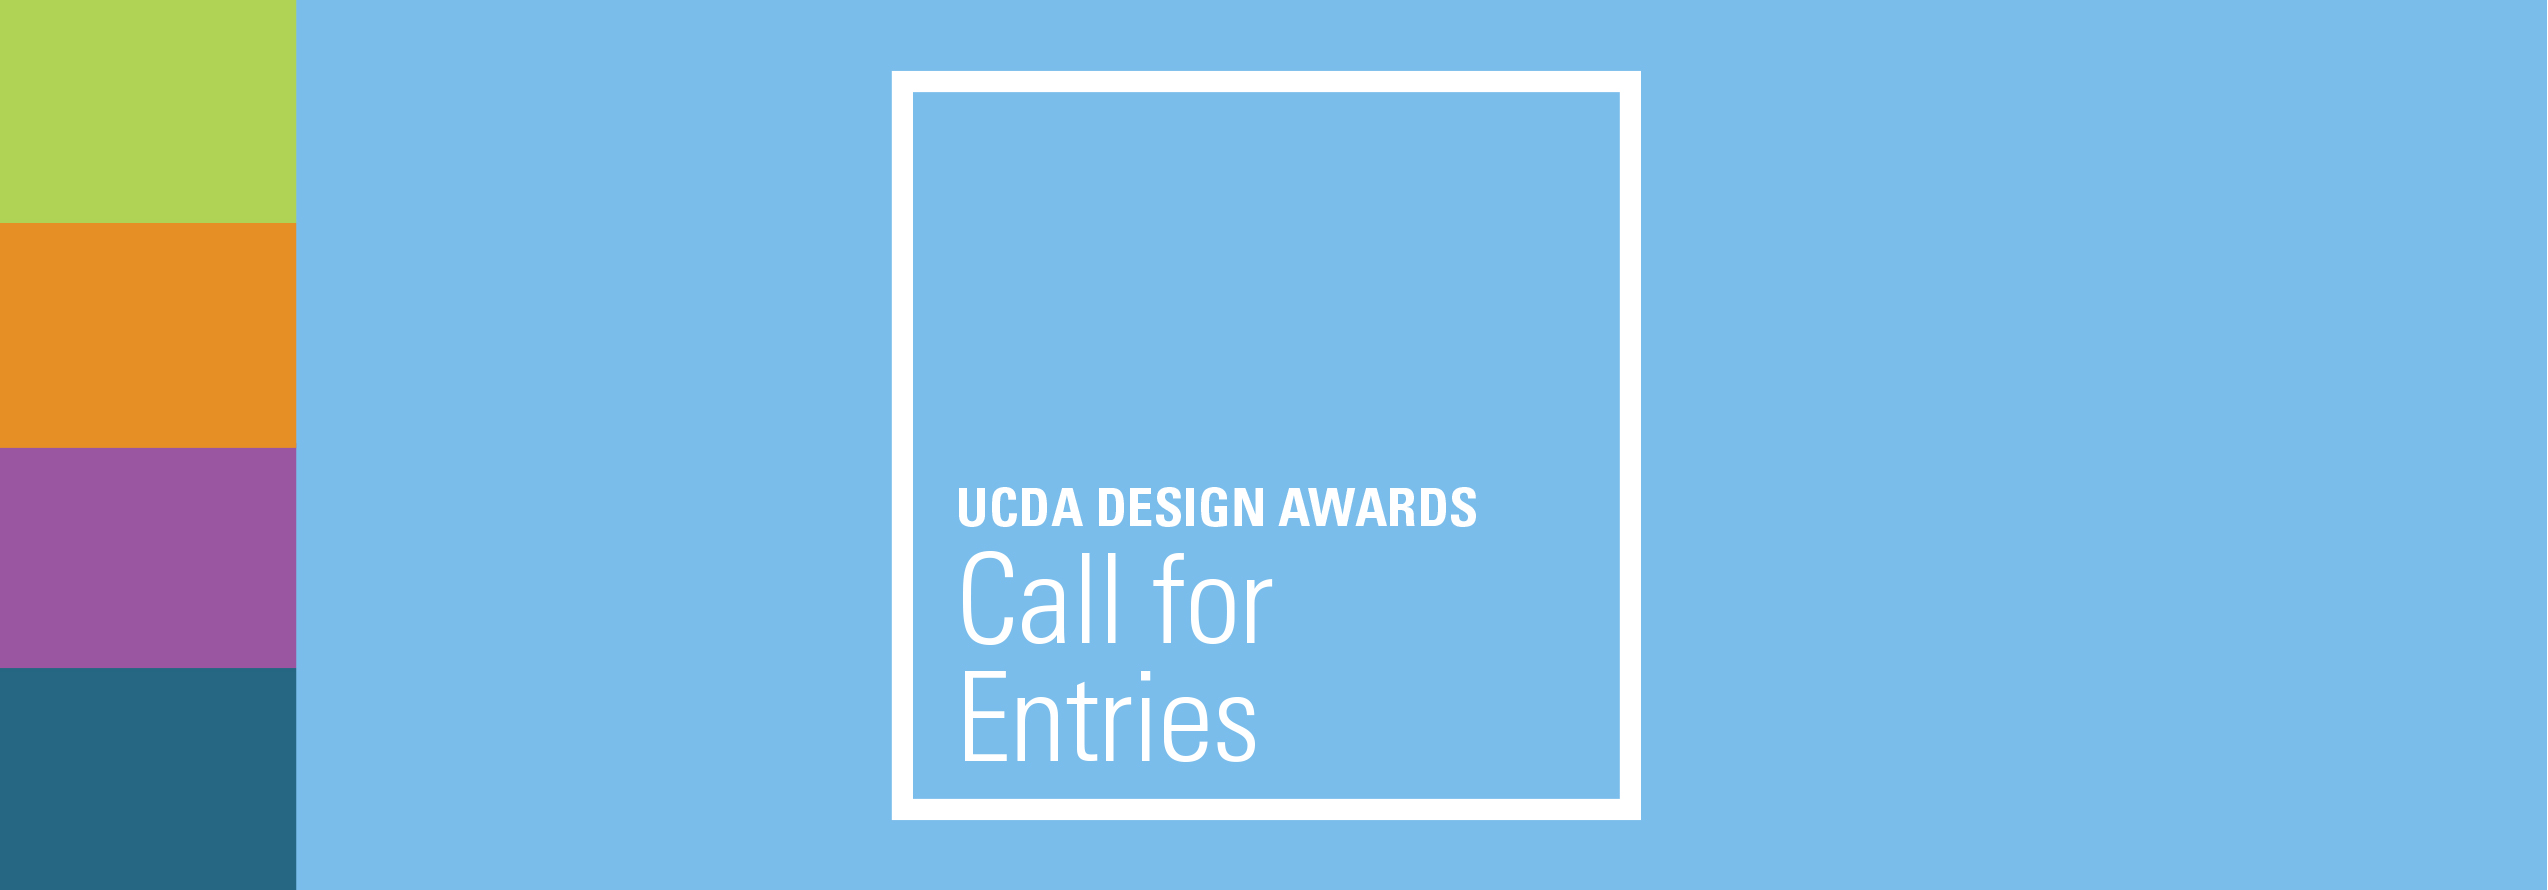 فراخوان رقابت بین المللی جوایز طراحی UCDA 2021